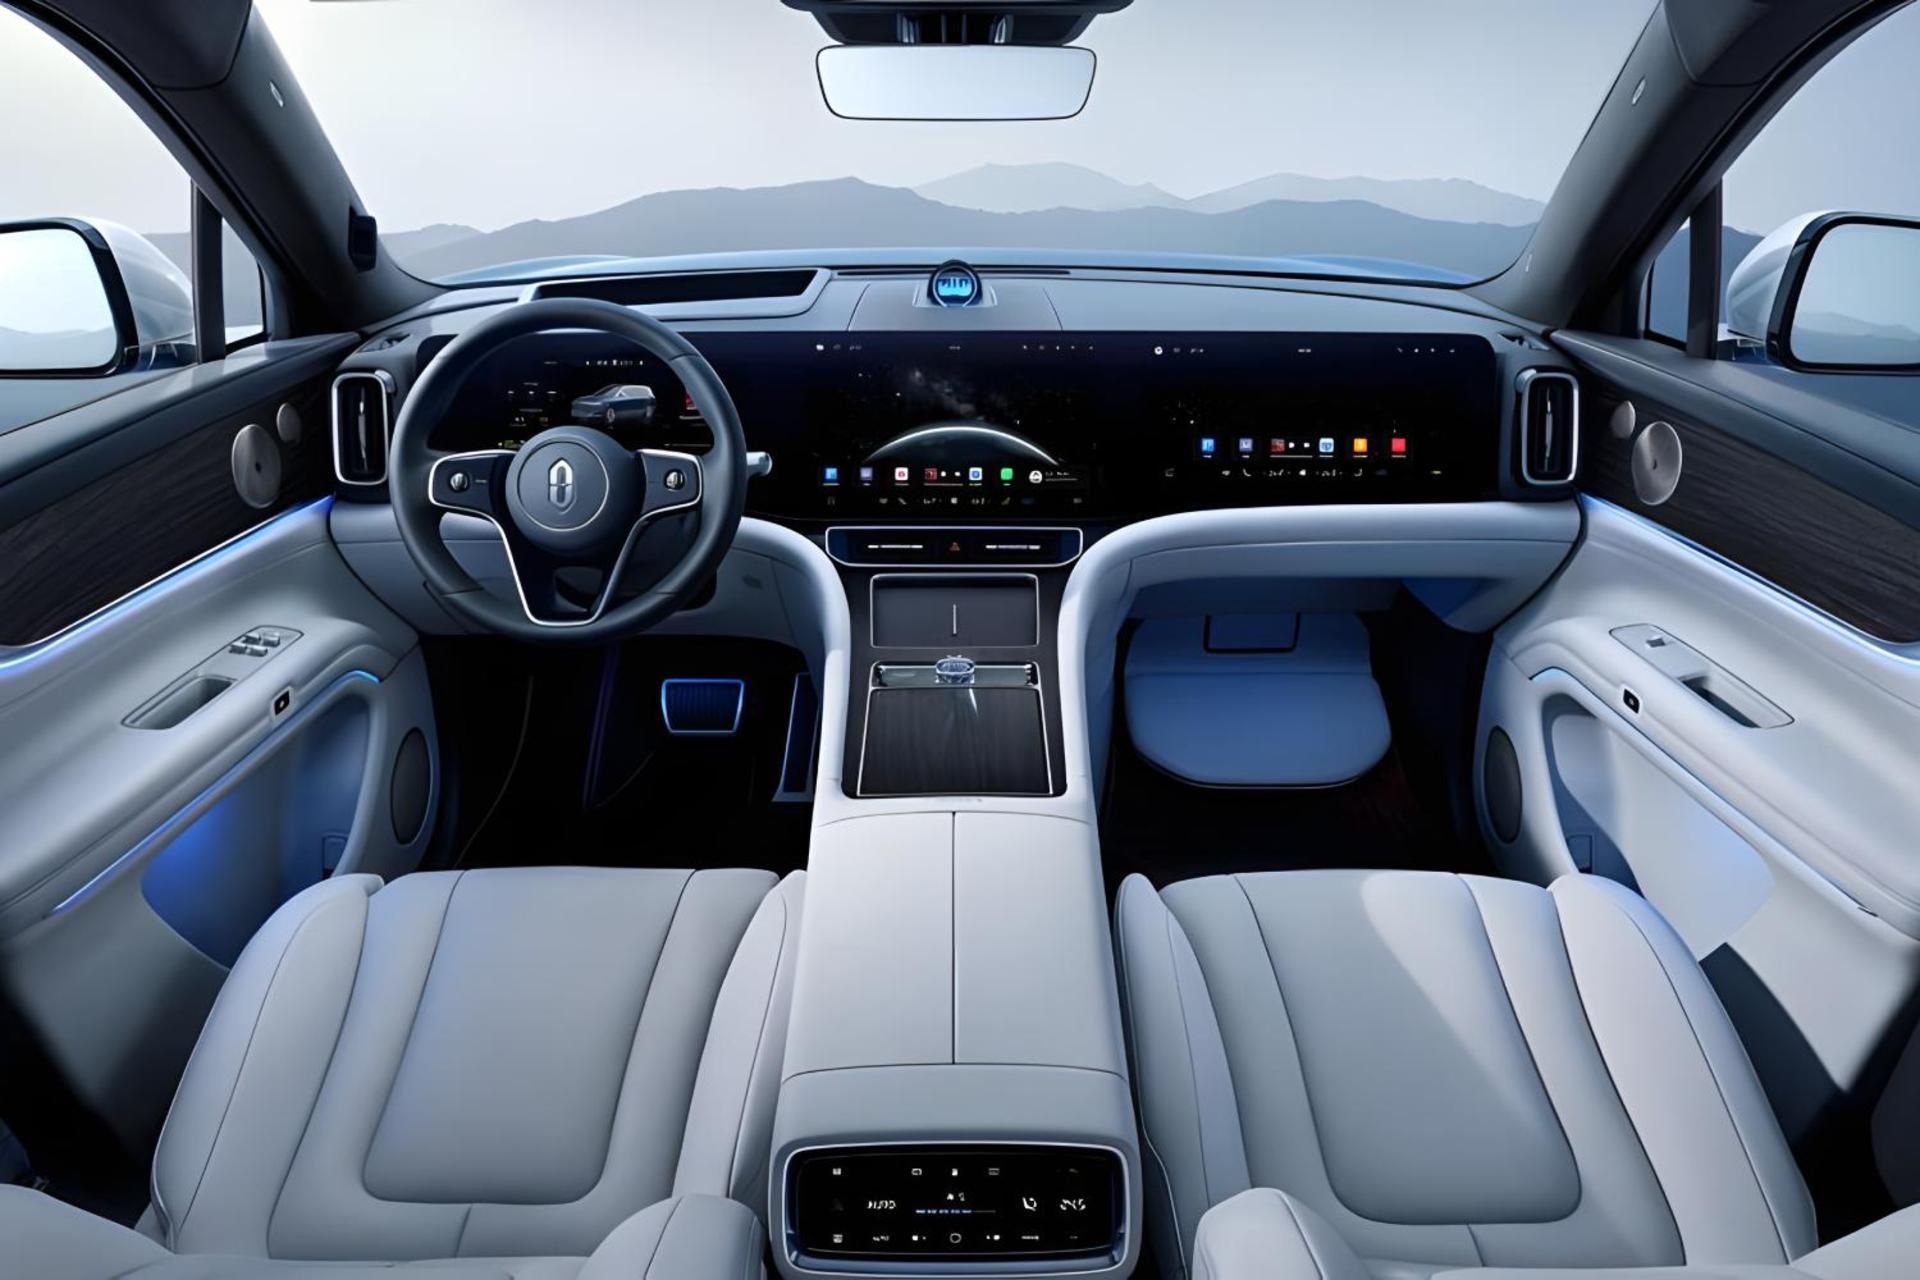 مرجع متخصصين ايران نماي داخل خودرو هوشمند با سيستم رانندگي خودكار هواوي